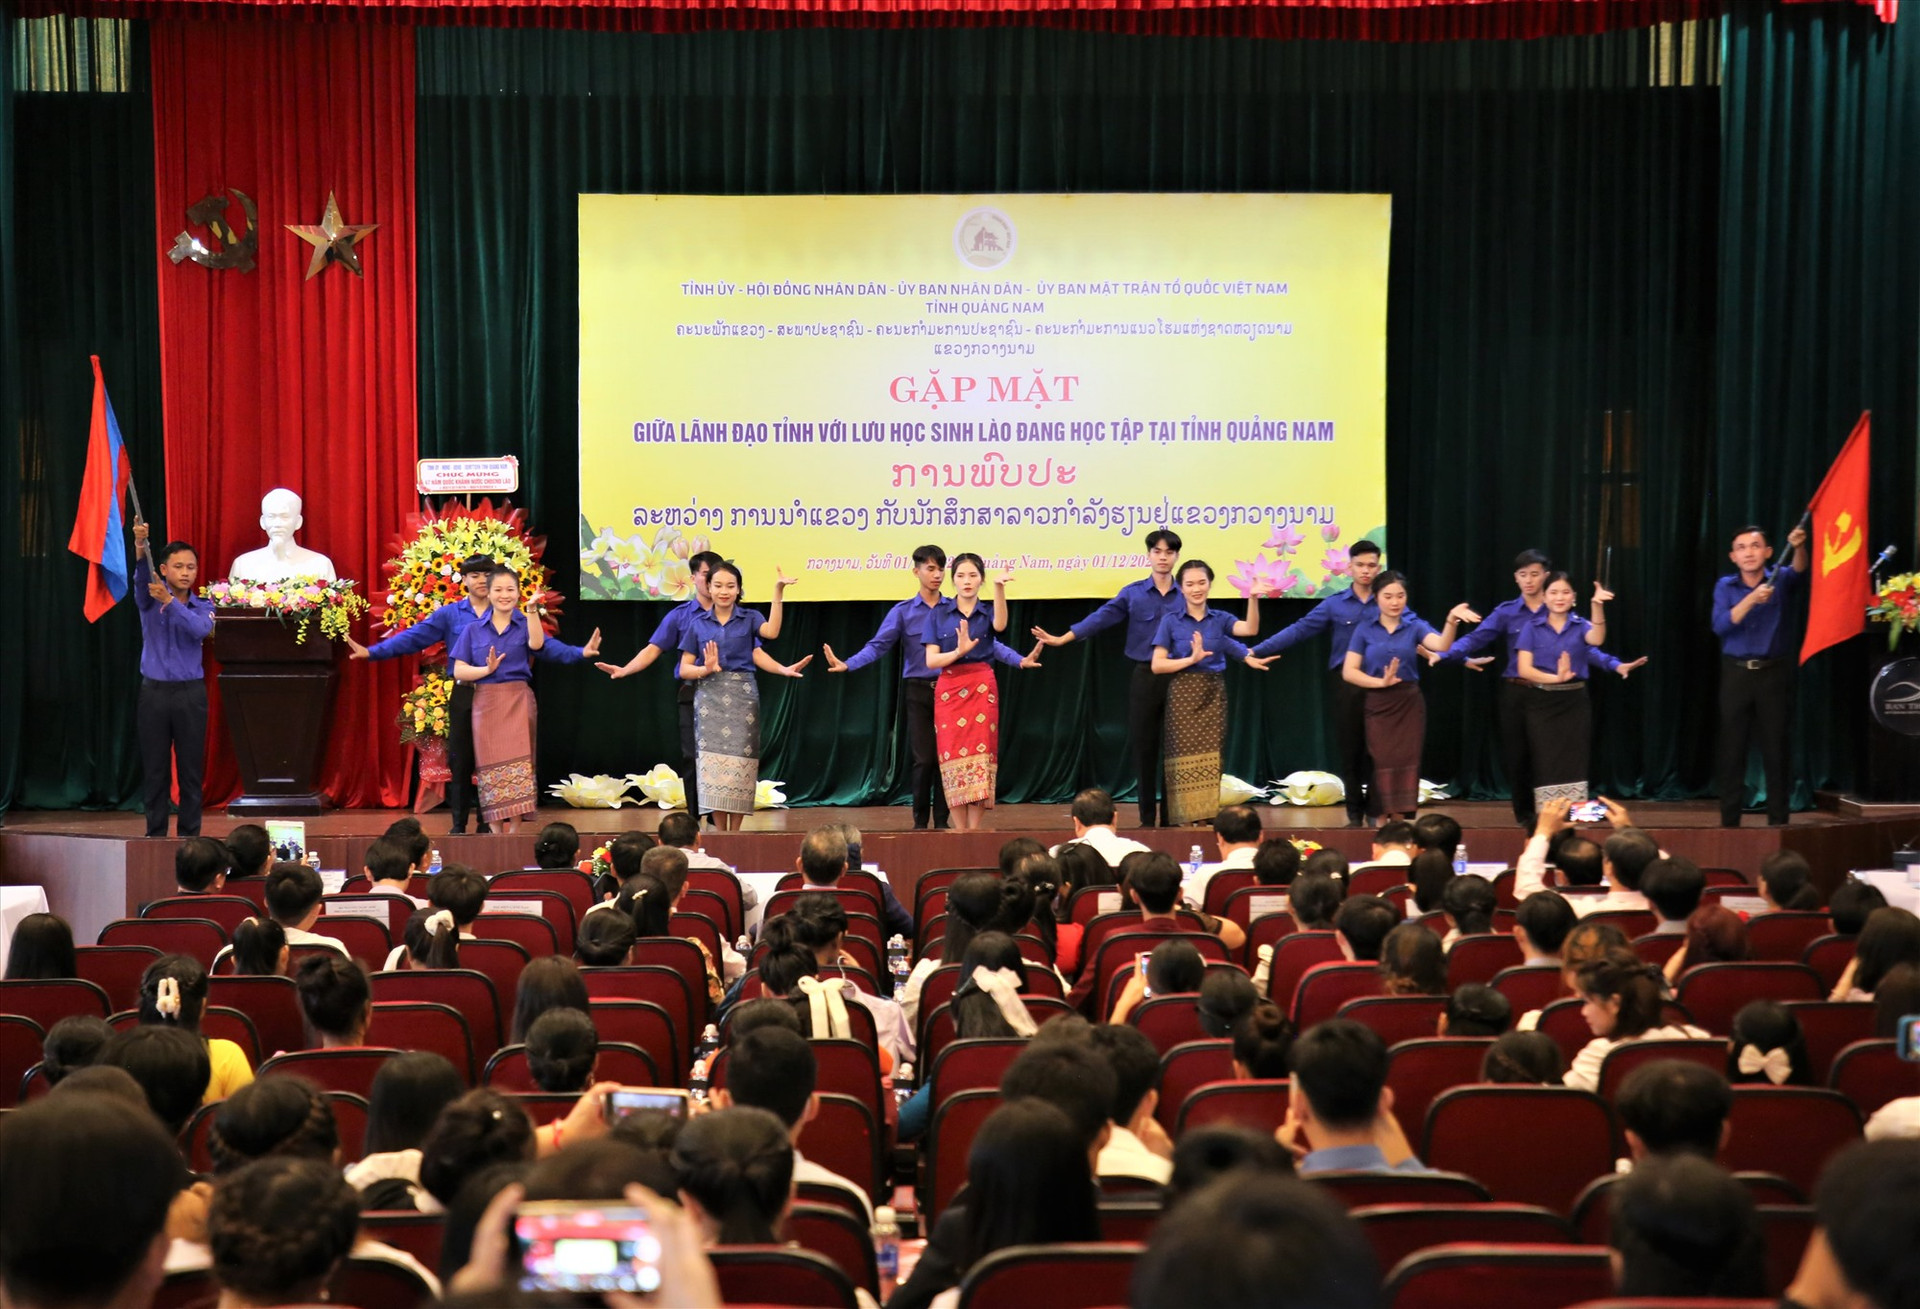 Các lưu học sinh Lào biểu diễn chương trình văn nghệ chào mừng. Ảnh: A.N